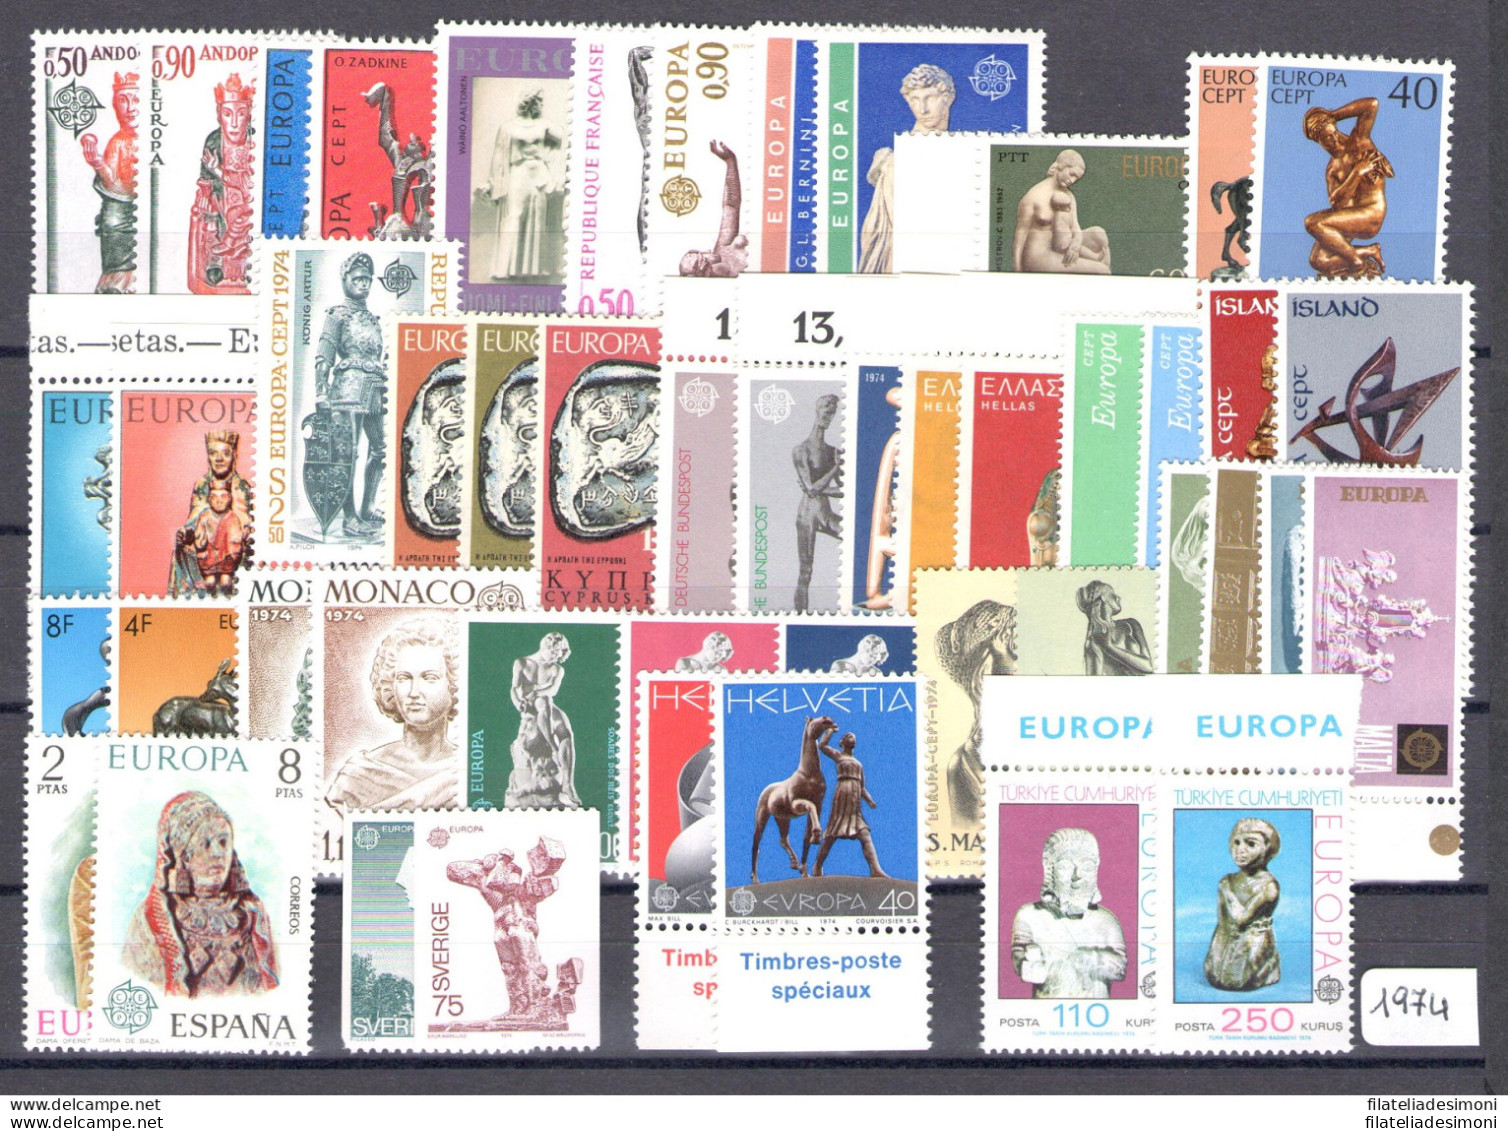 1974 EUROPA CEPT , Annata Completa , Francobolli Nuovi , "Sculture" 23 Paesi 49 - Annate Complete